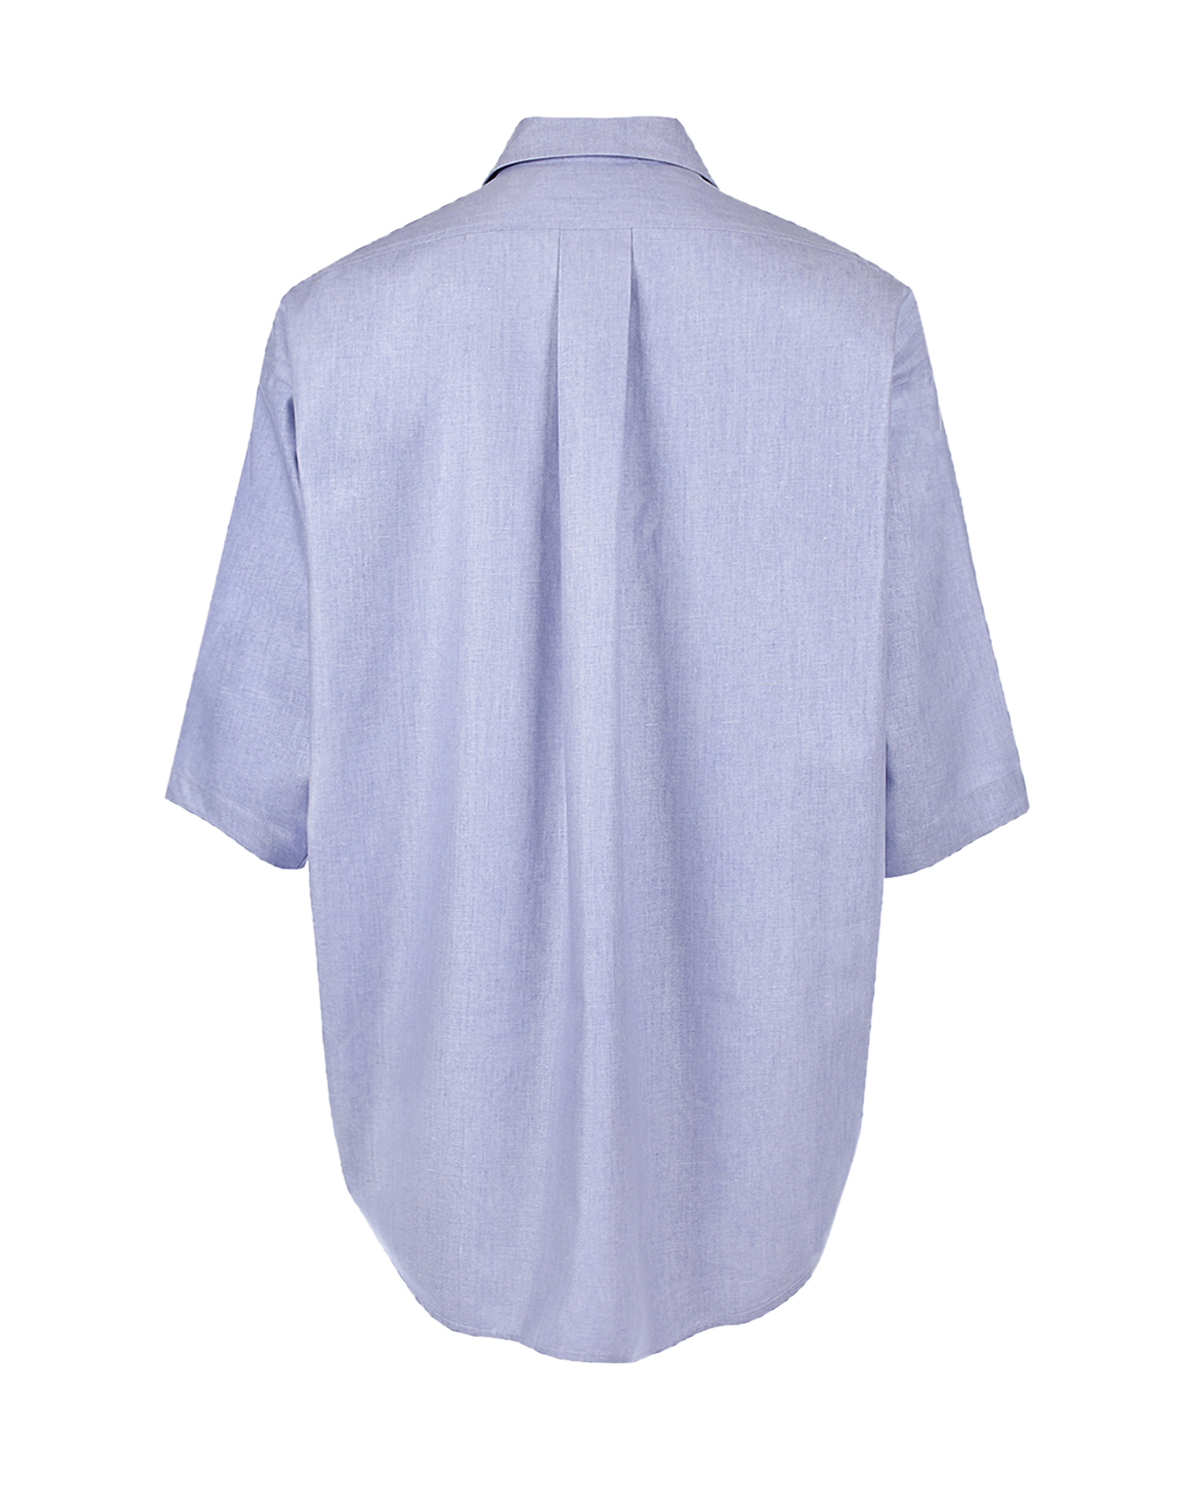 Рубашка oversize лавандового цвета Zhanna and Anna, размер 40 - фото 2